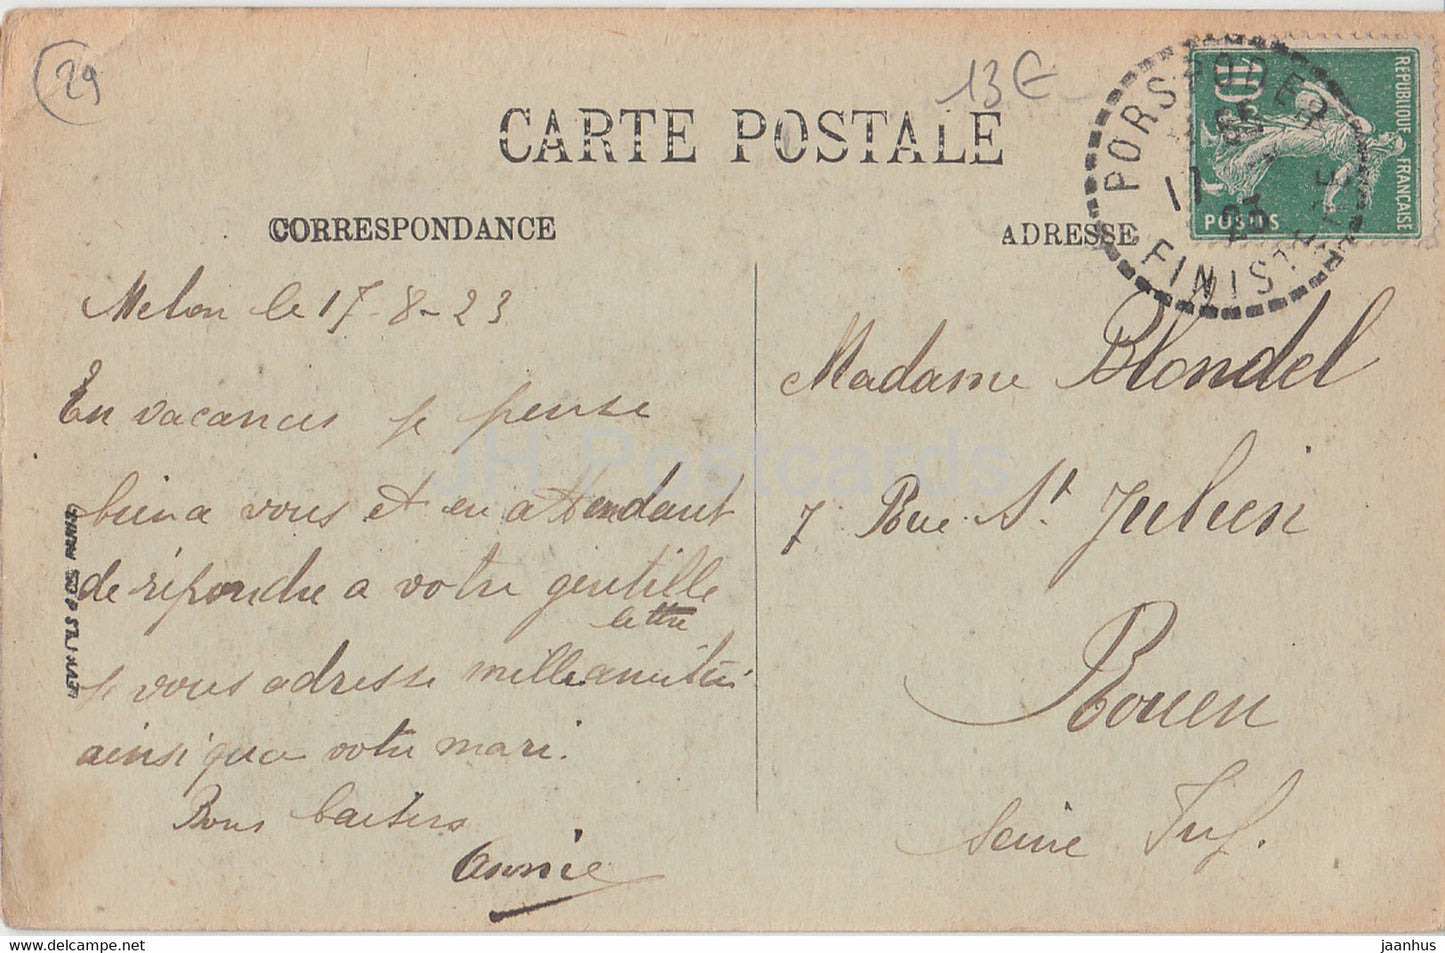 Ile Melon - Le Menhir et les Alignements - LP Brest - alte Postkarte - 1923 - Frankreich - gebraucht